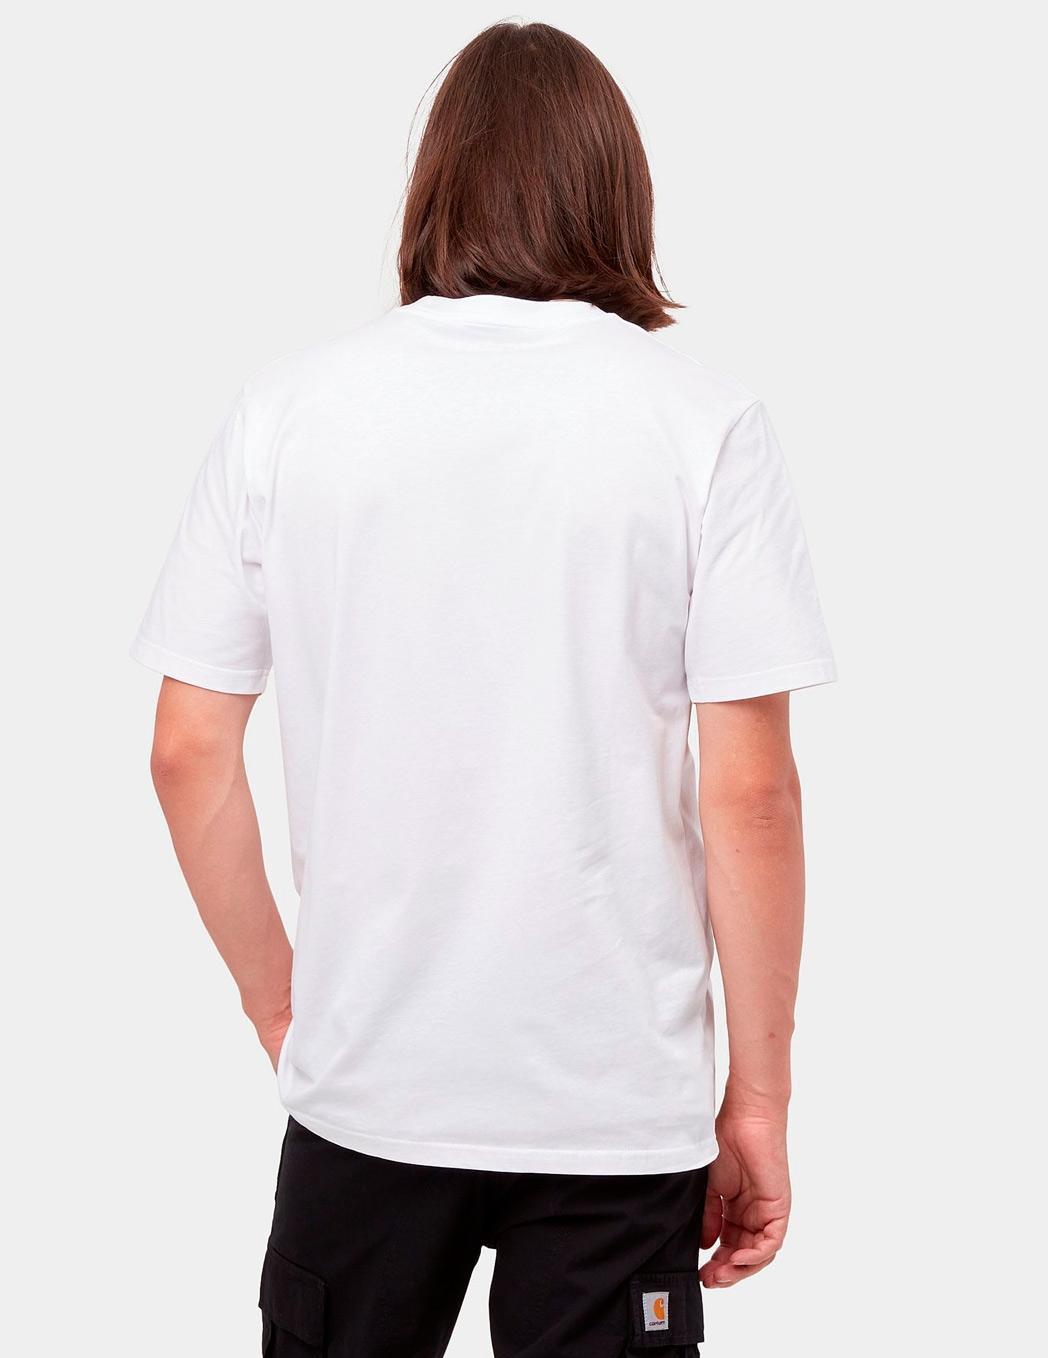 Camiseta CARHARTT SCRIPT - White / Black